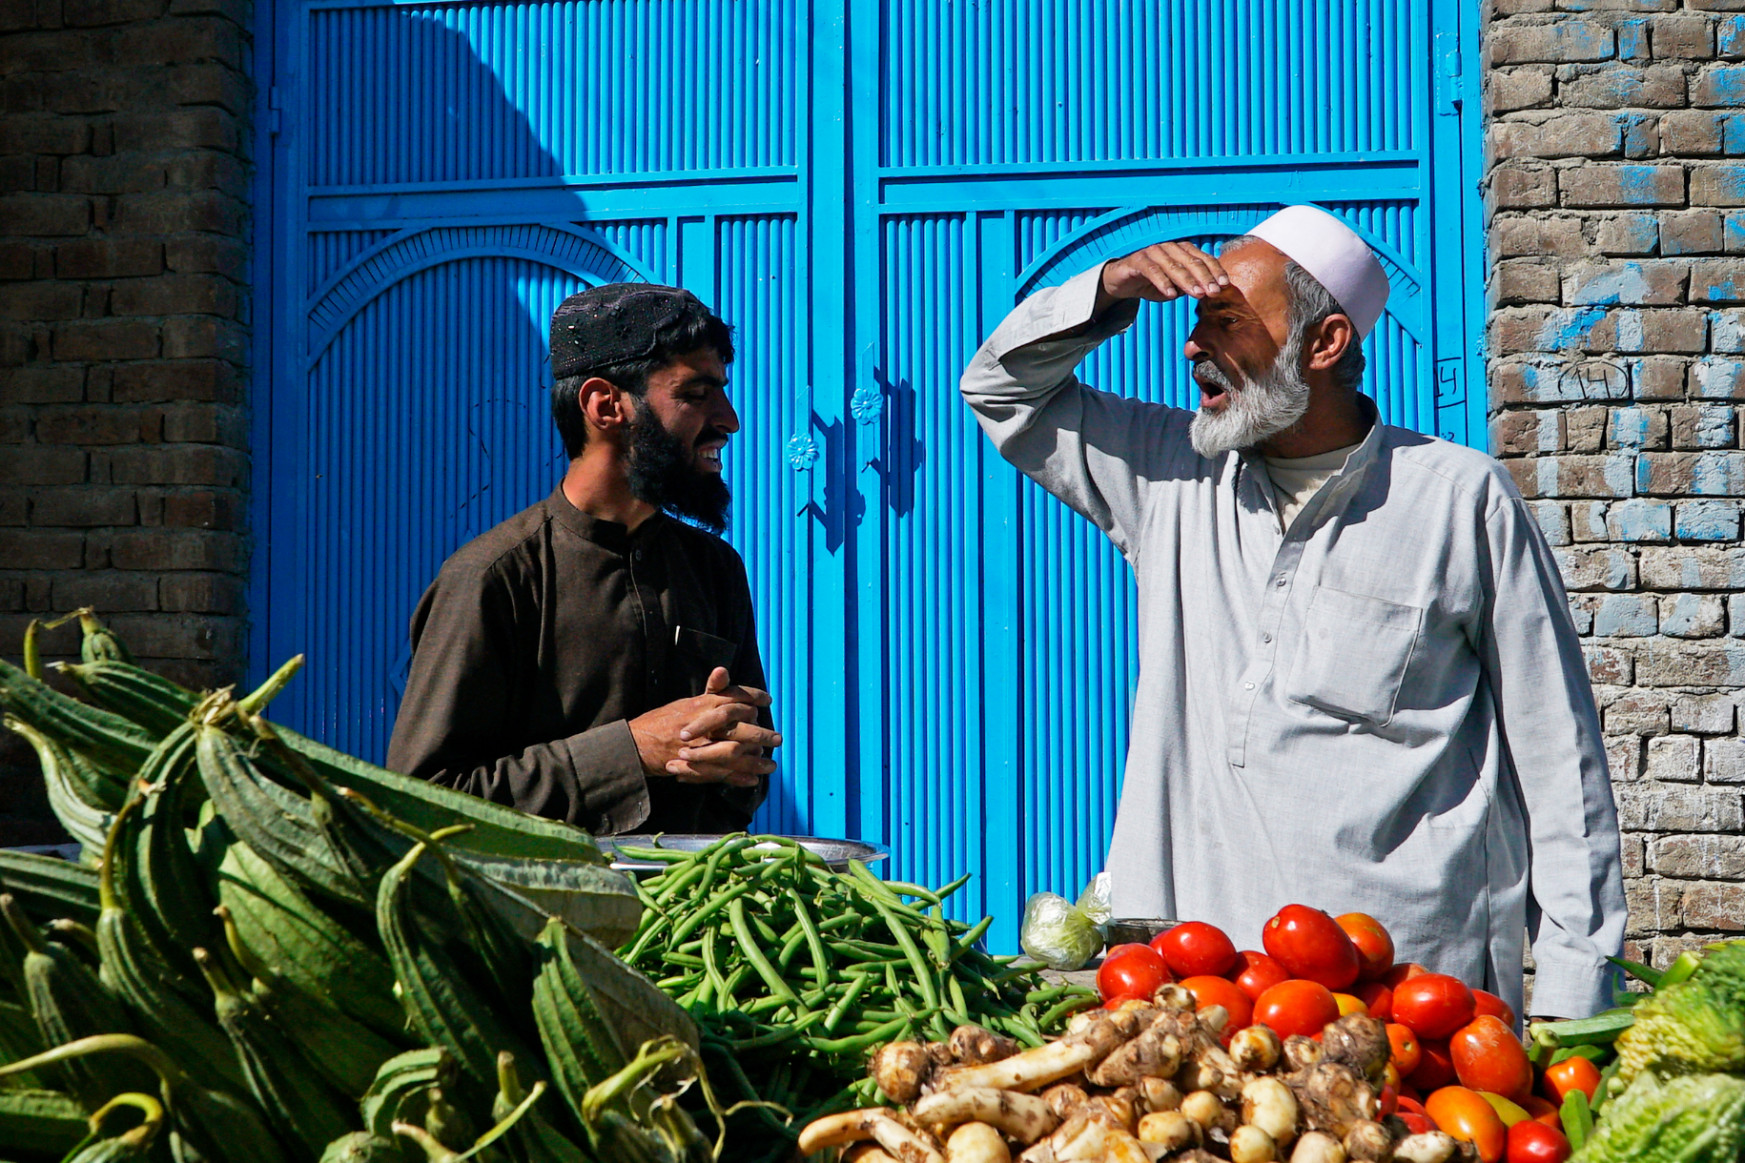 Afganisztánból nézve még zűrösebb a jövő, mint gondolnánk